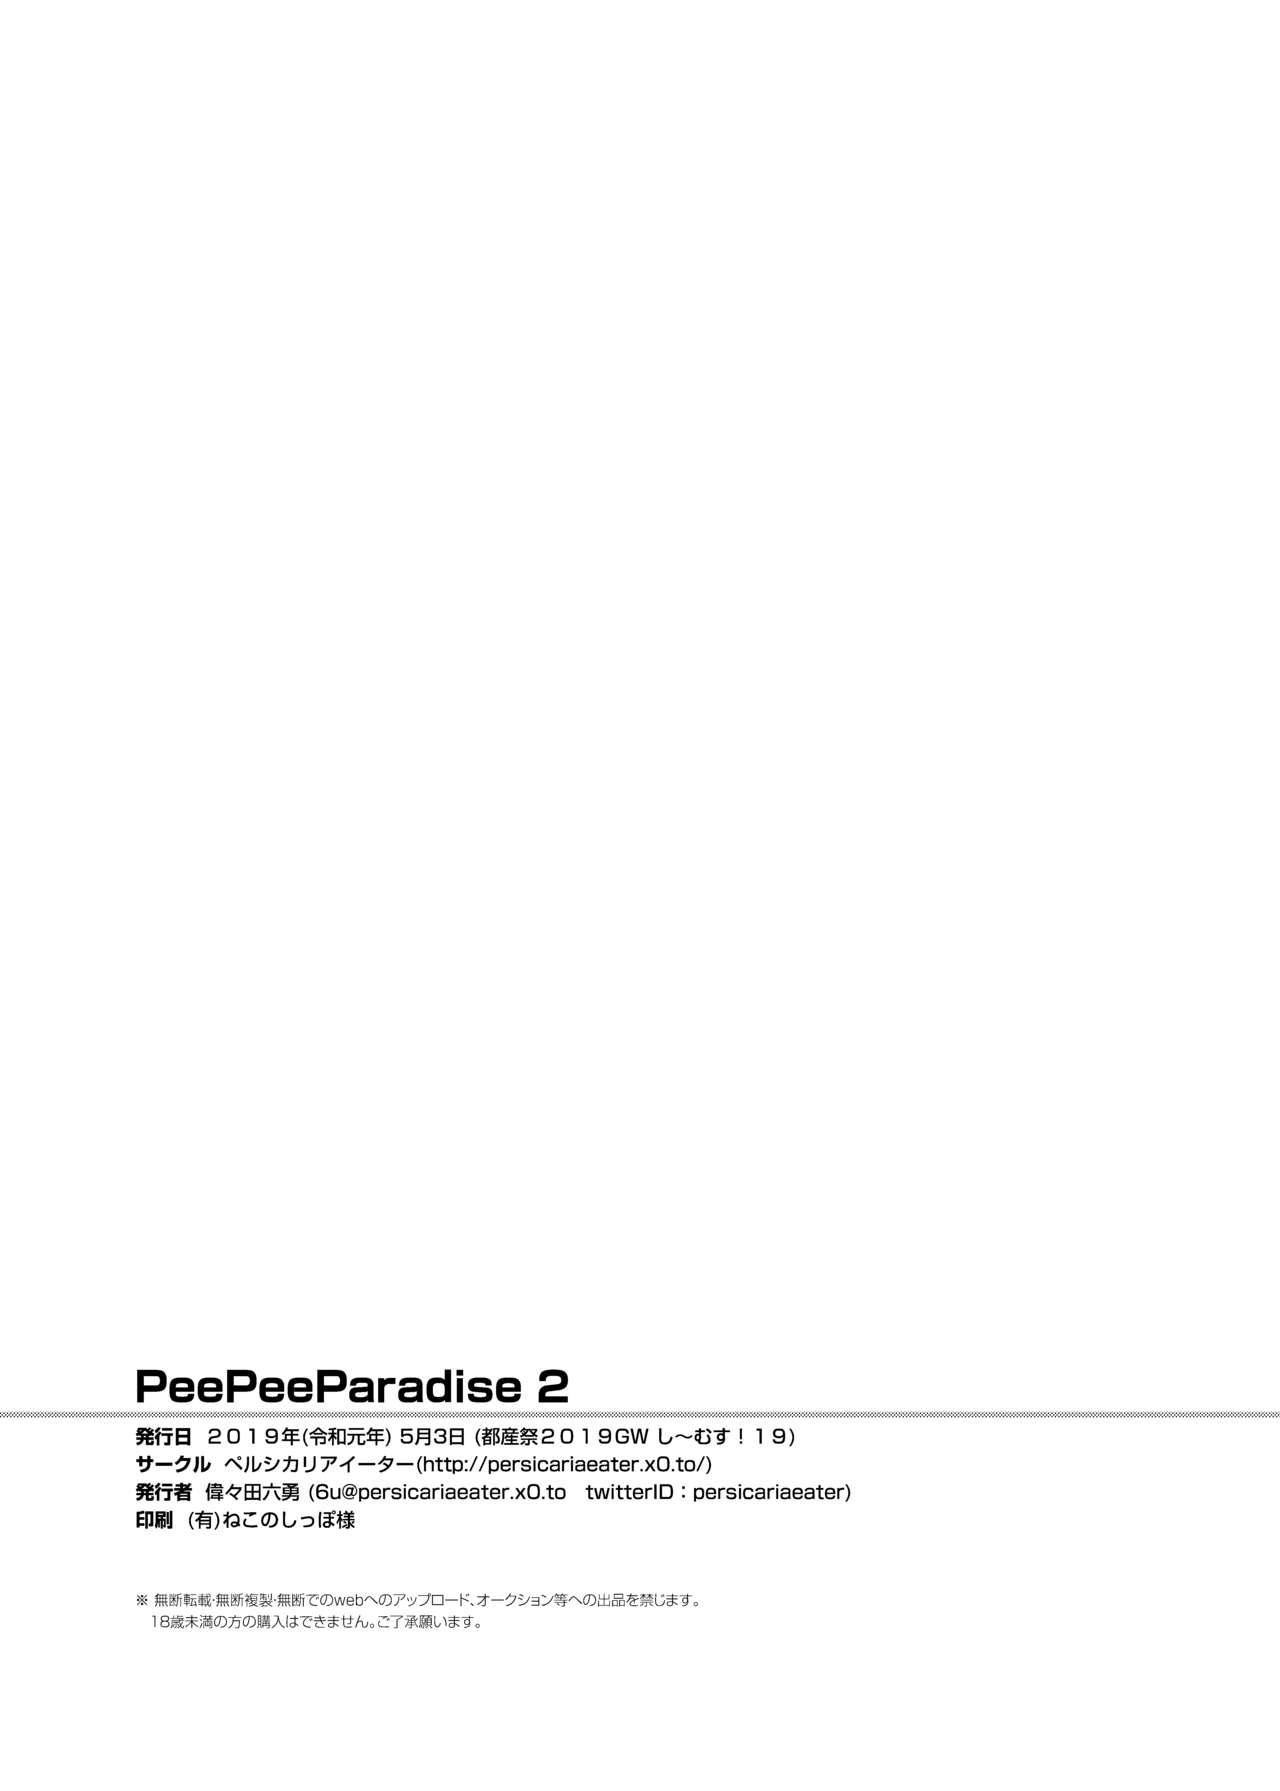 PeePeeParadise 2 20